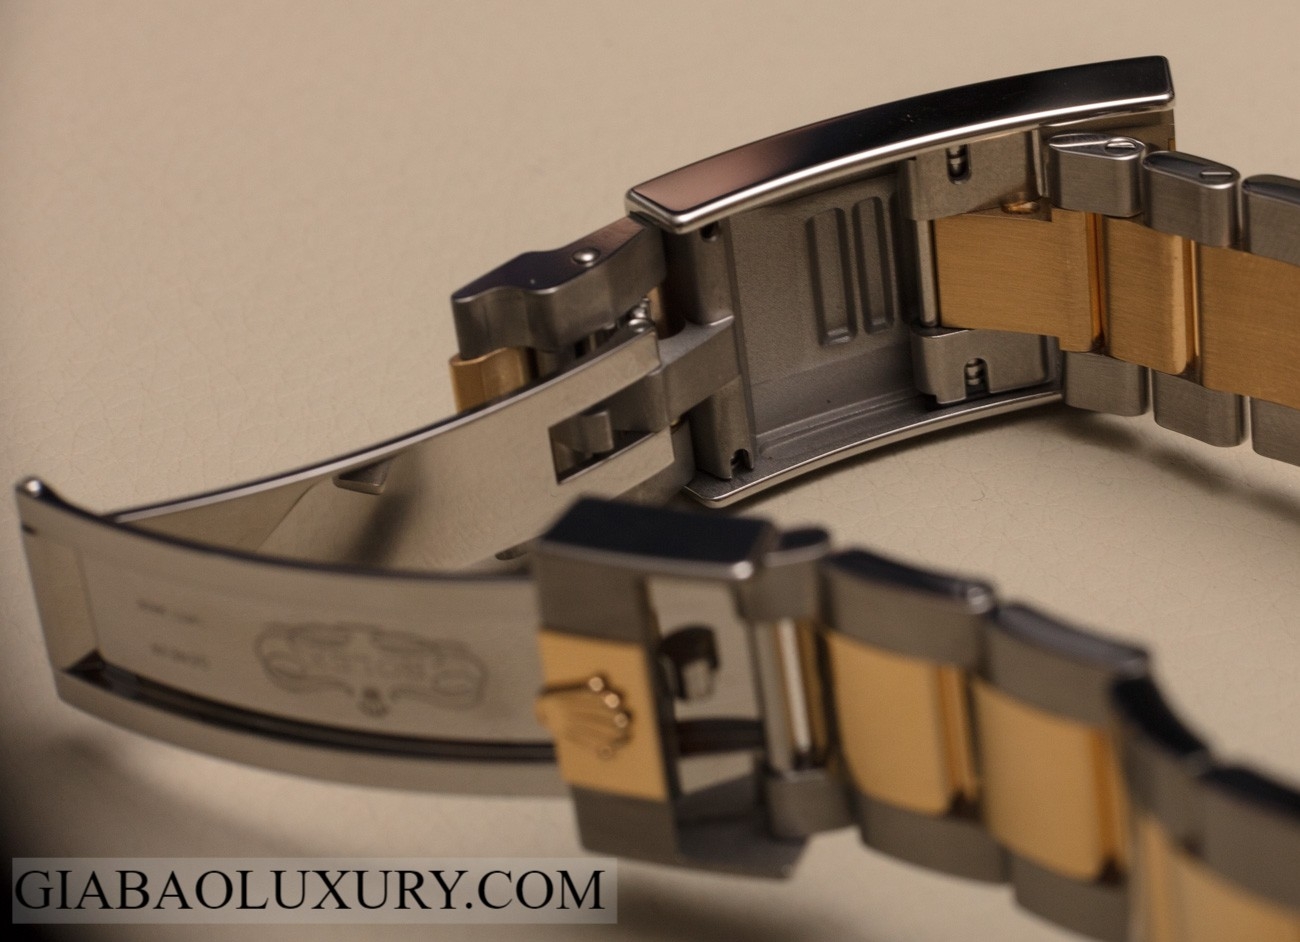 Giới thiệu đồng hồ Rolex Sea-Dweller 126603 phiên bản Rolesor vàng 43mm